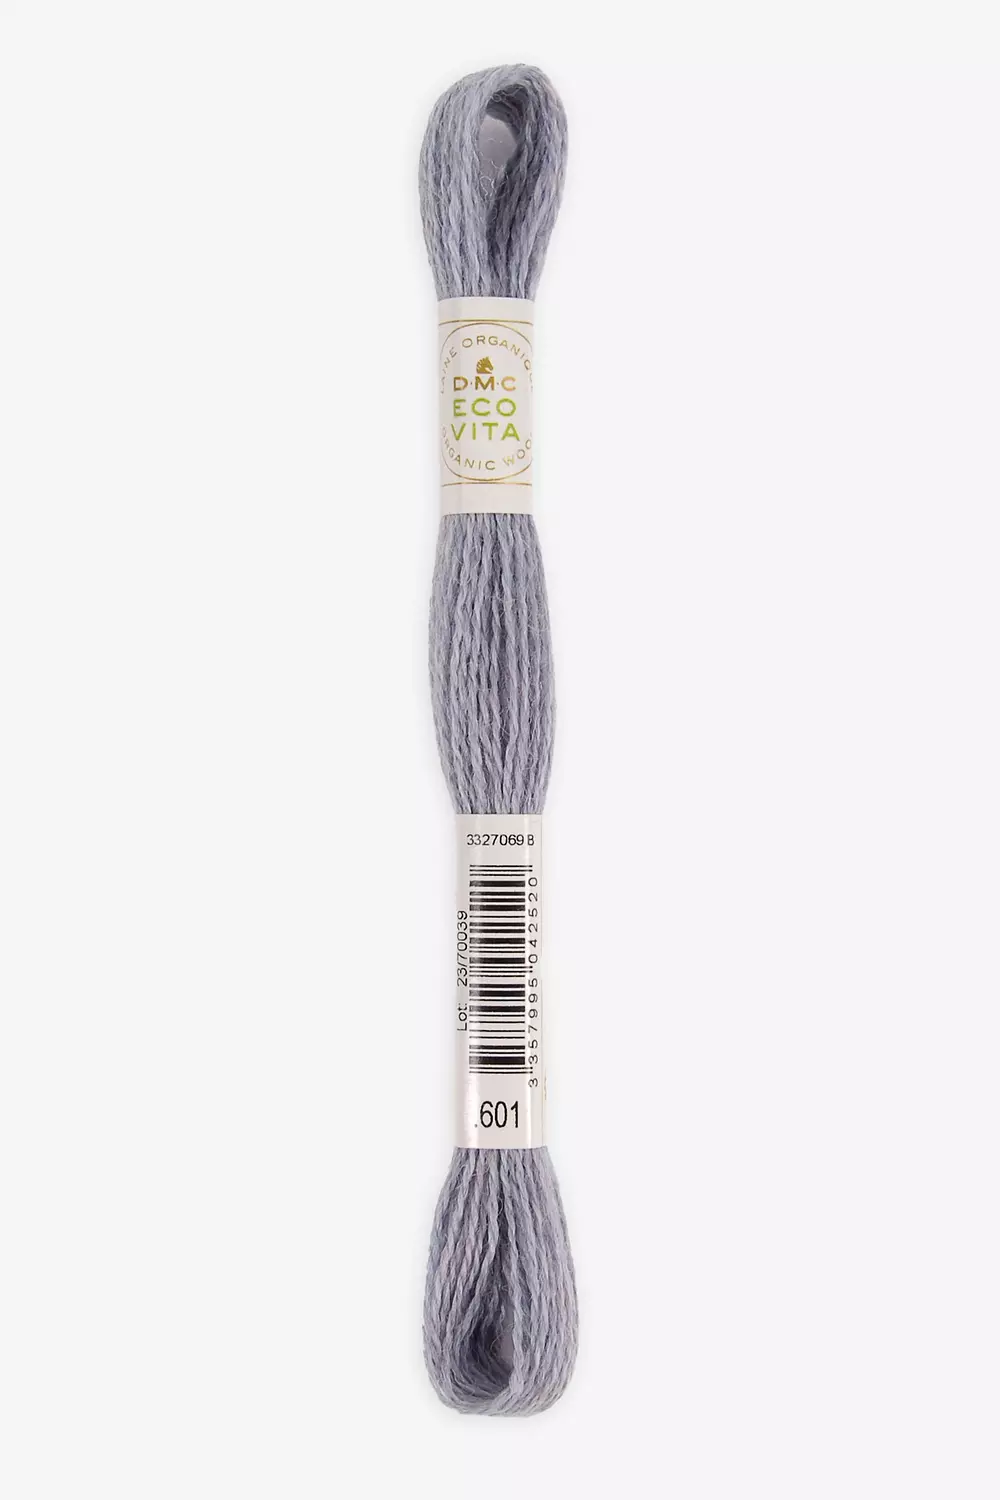 Eco Vita hilo de lana orgánica teñida con tintes naturales - DMC